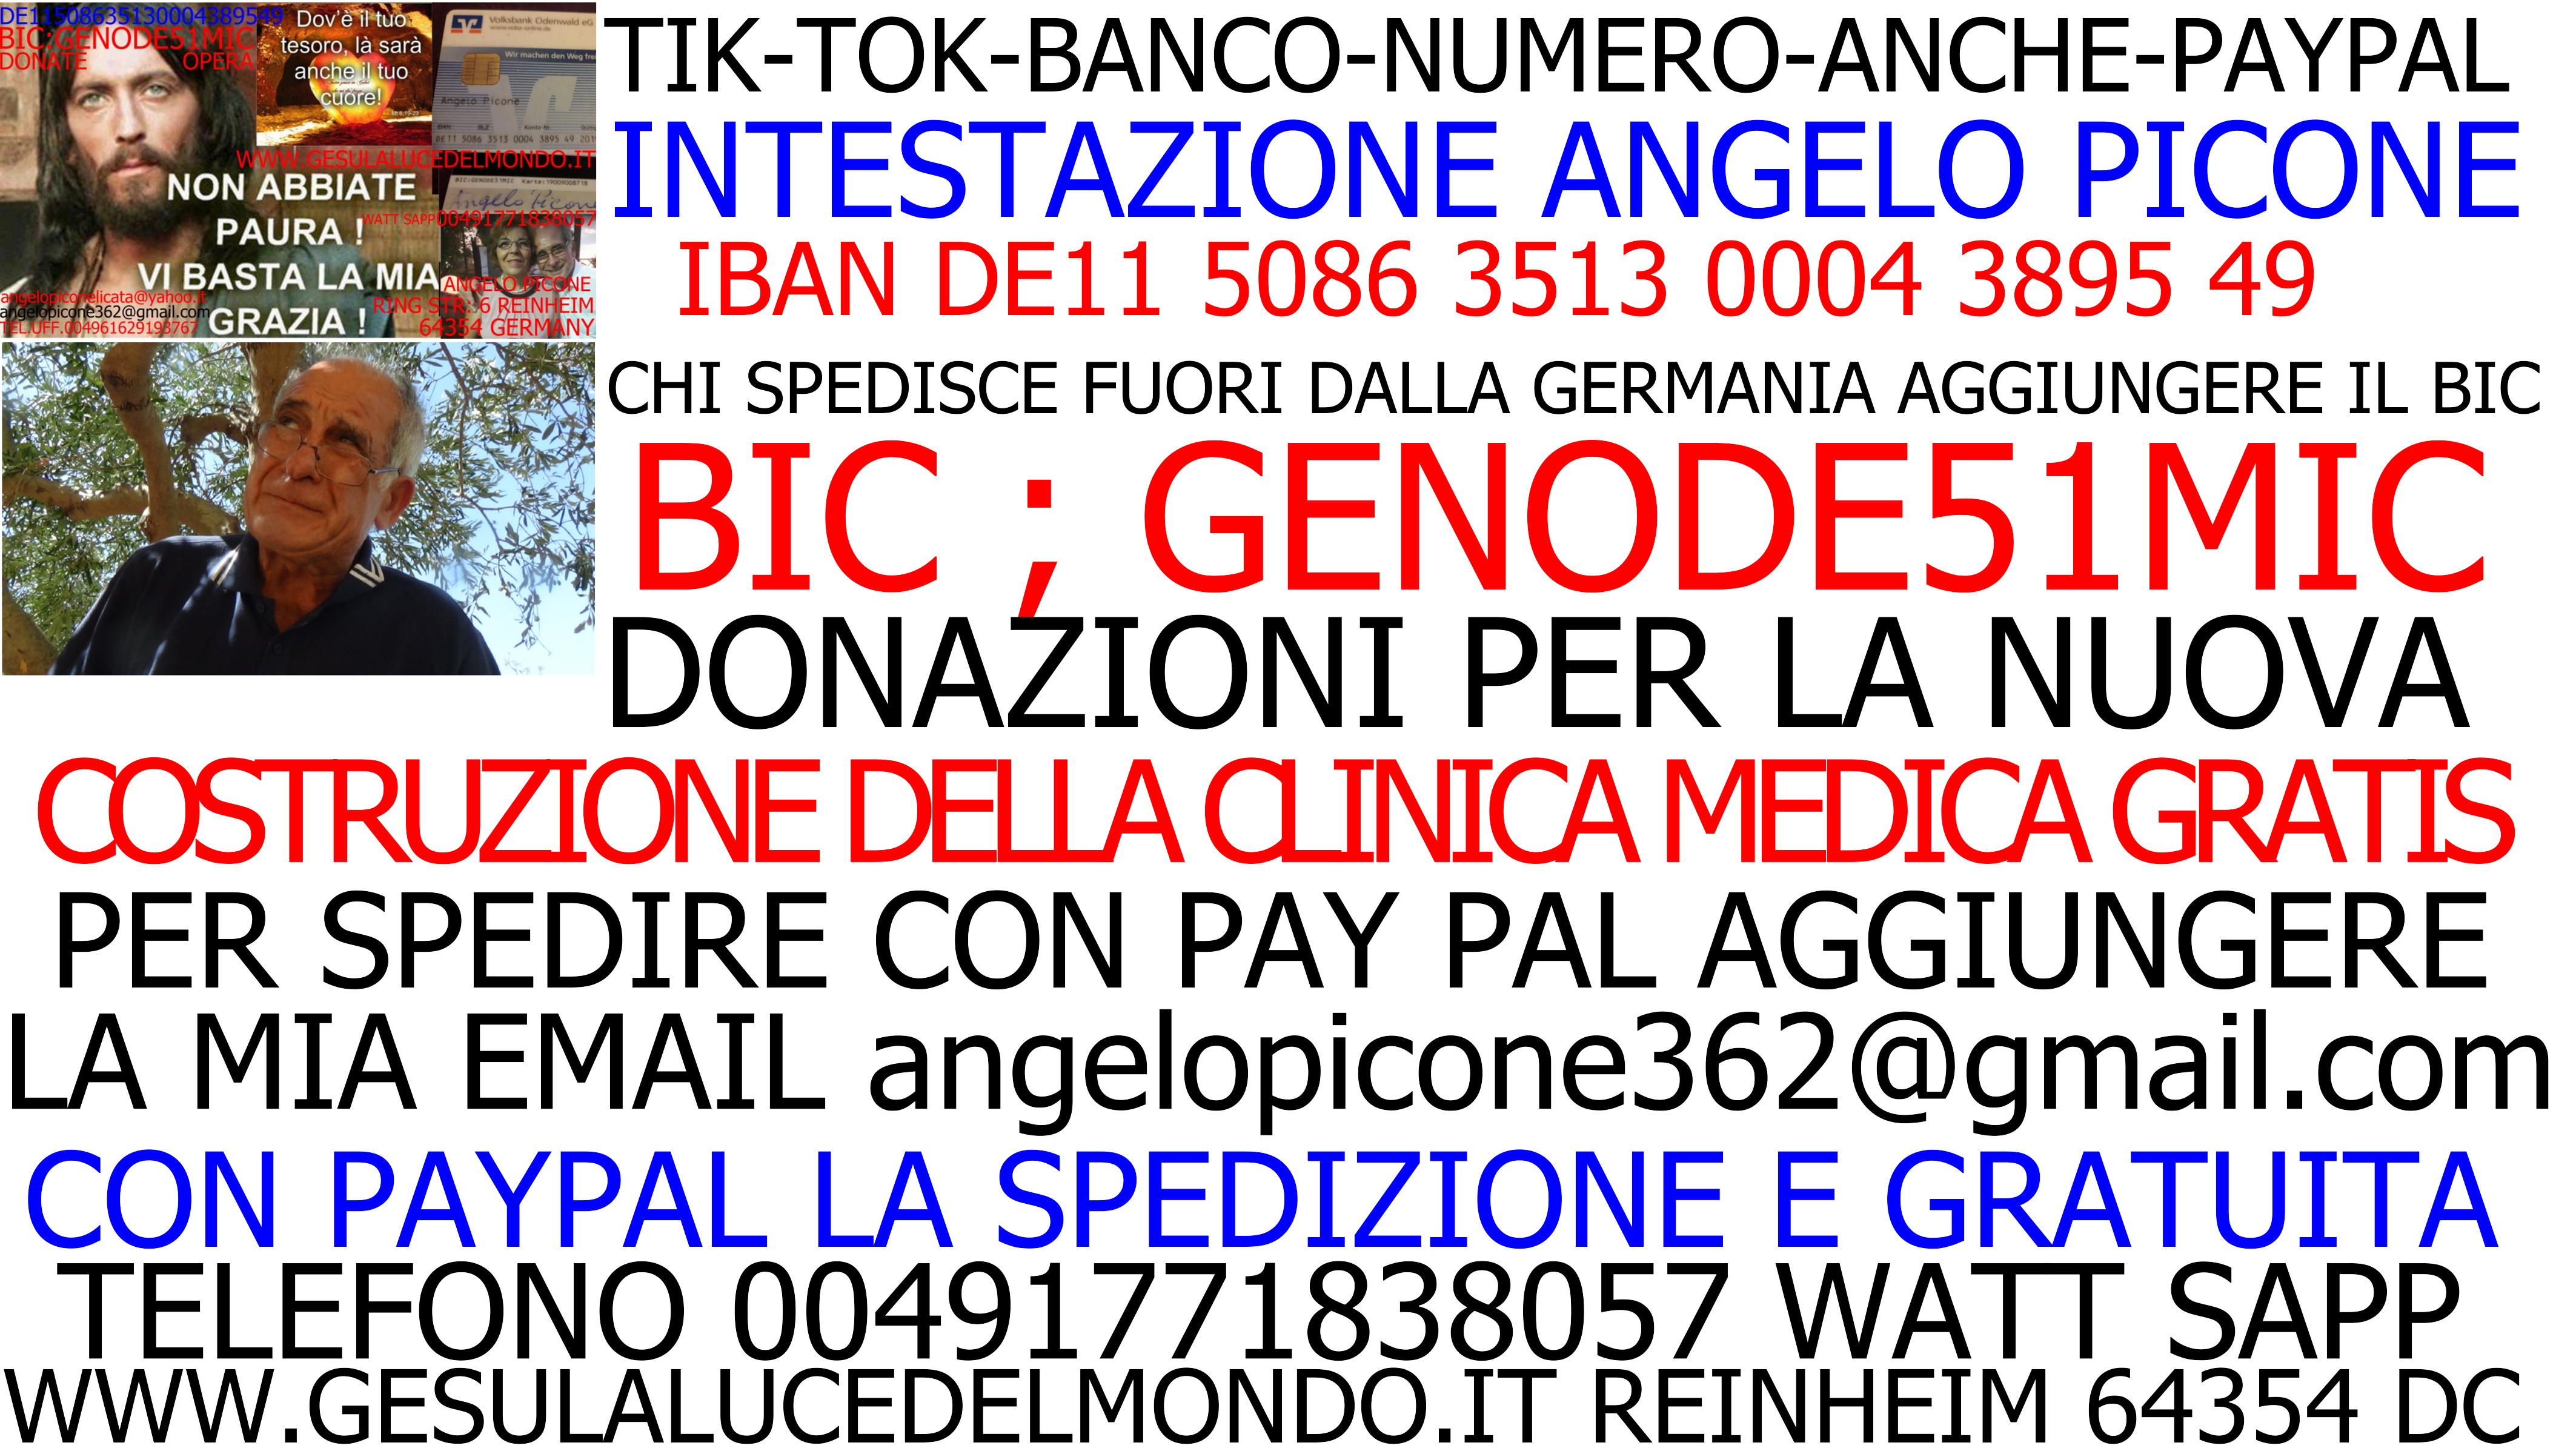 http://www.gesulalucedelmondo.it/2-TIK-TOK-BANCO-NUMERO-ANCHE-PAYPAL-cartella/1-TIK-TOK-BANCO-NUMERO-ANCHE-PAYPAL.jpg